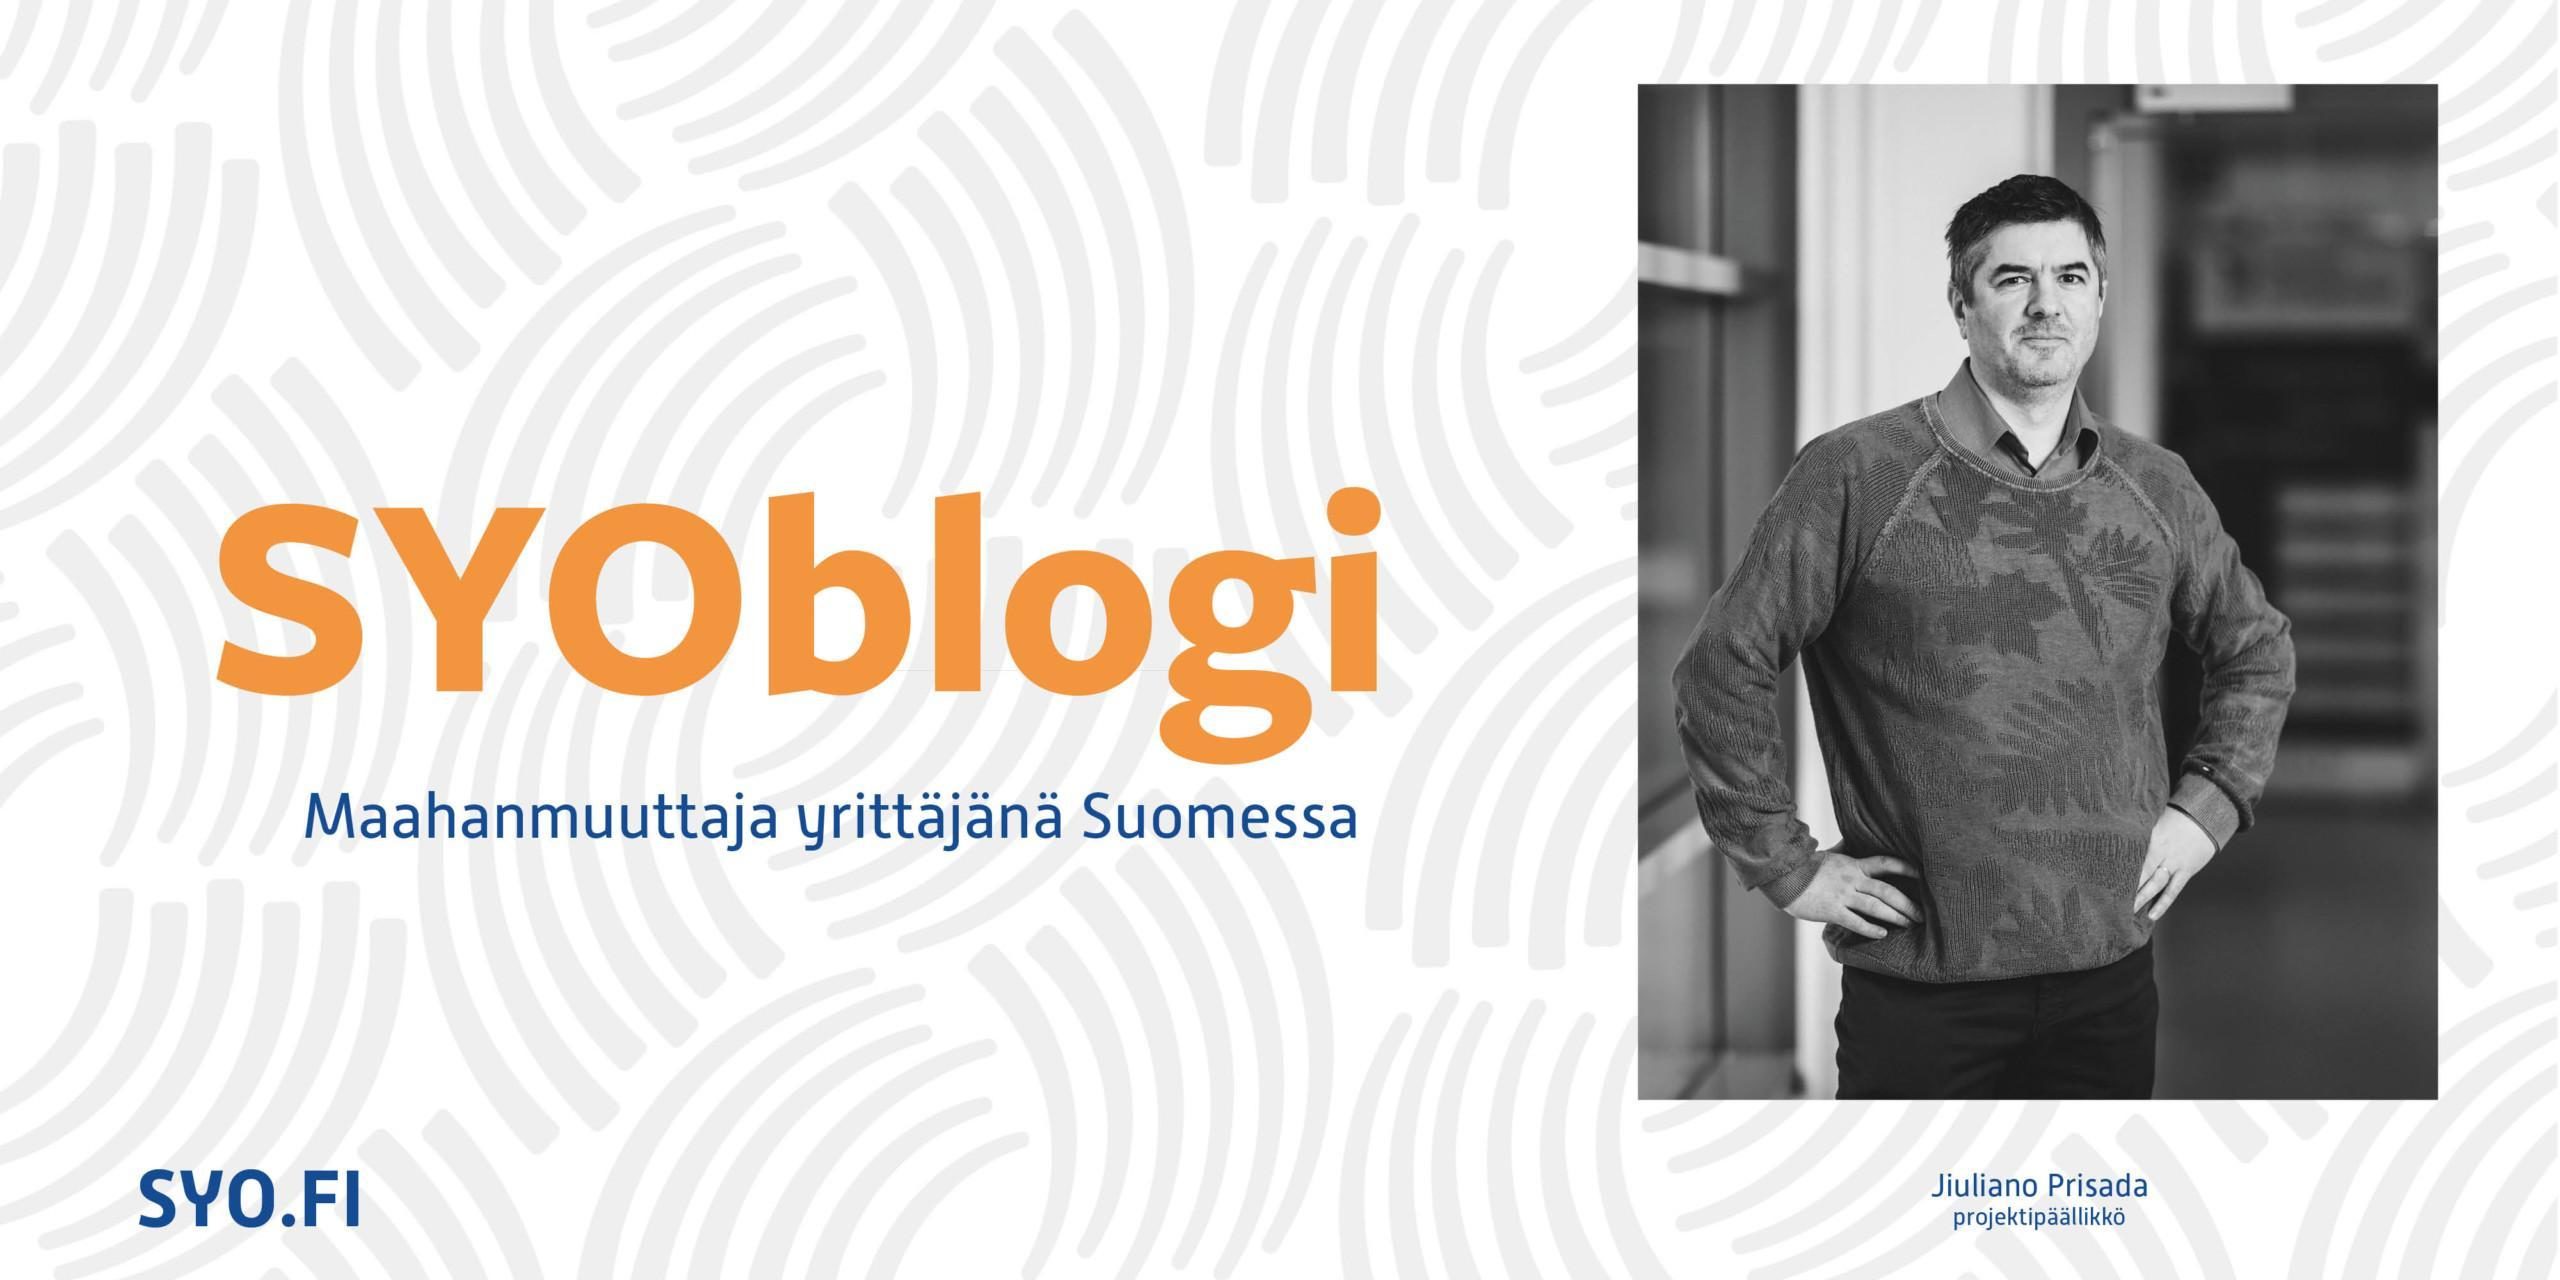 SYOblogi, Jiuliano Prisada, maahanmuuttaja yrittäjänä Suomessa.